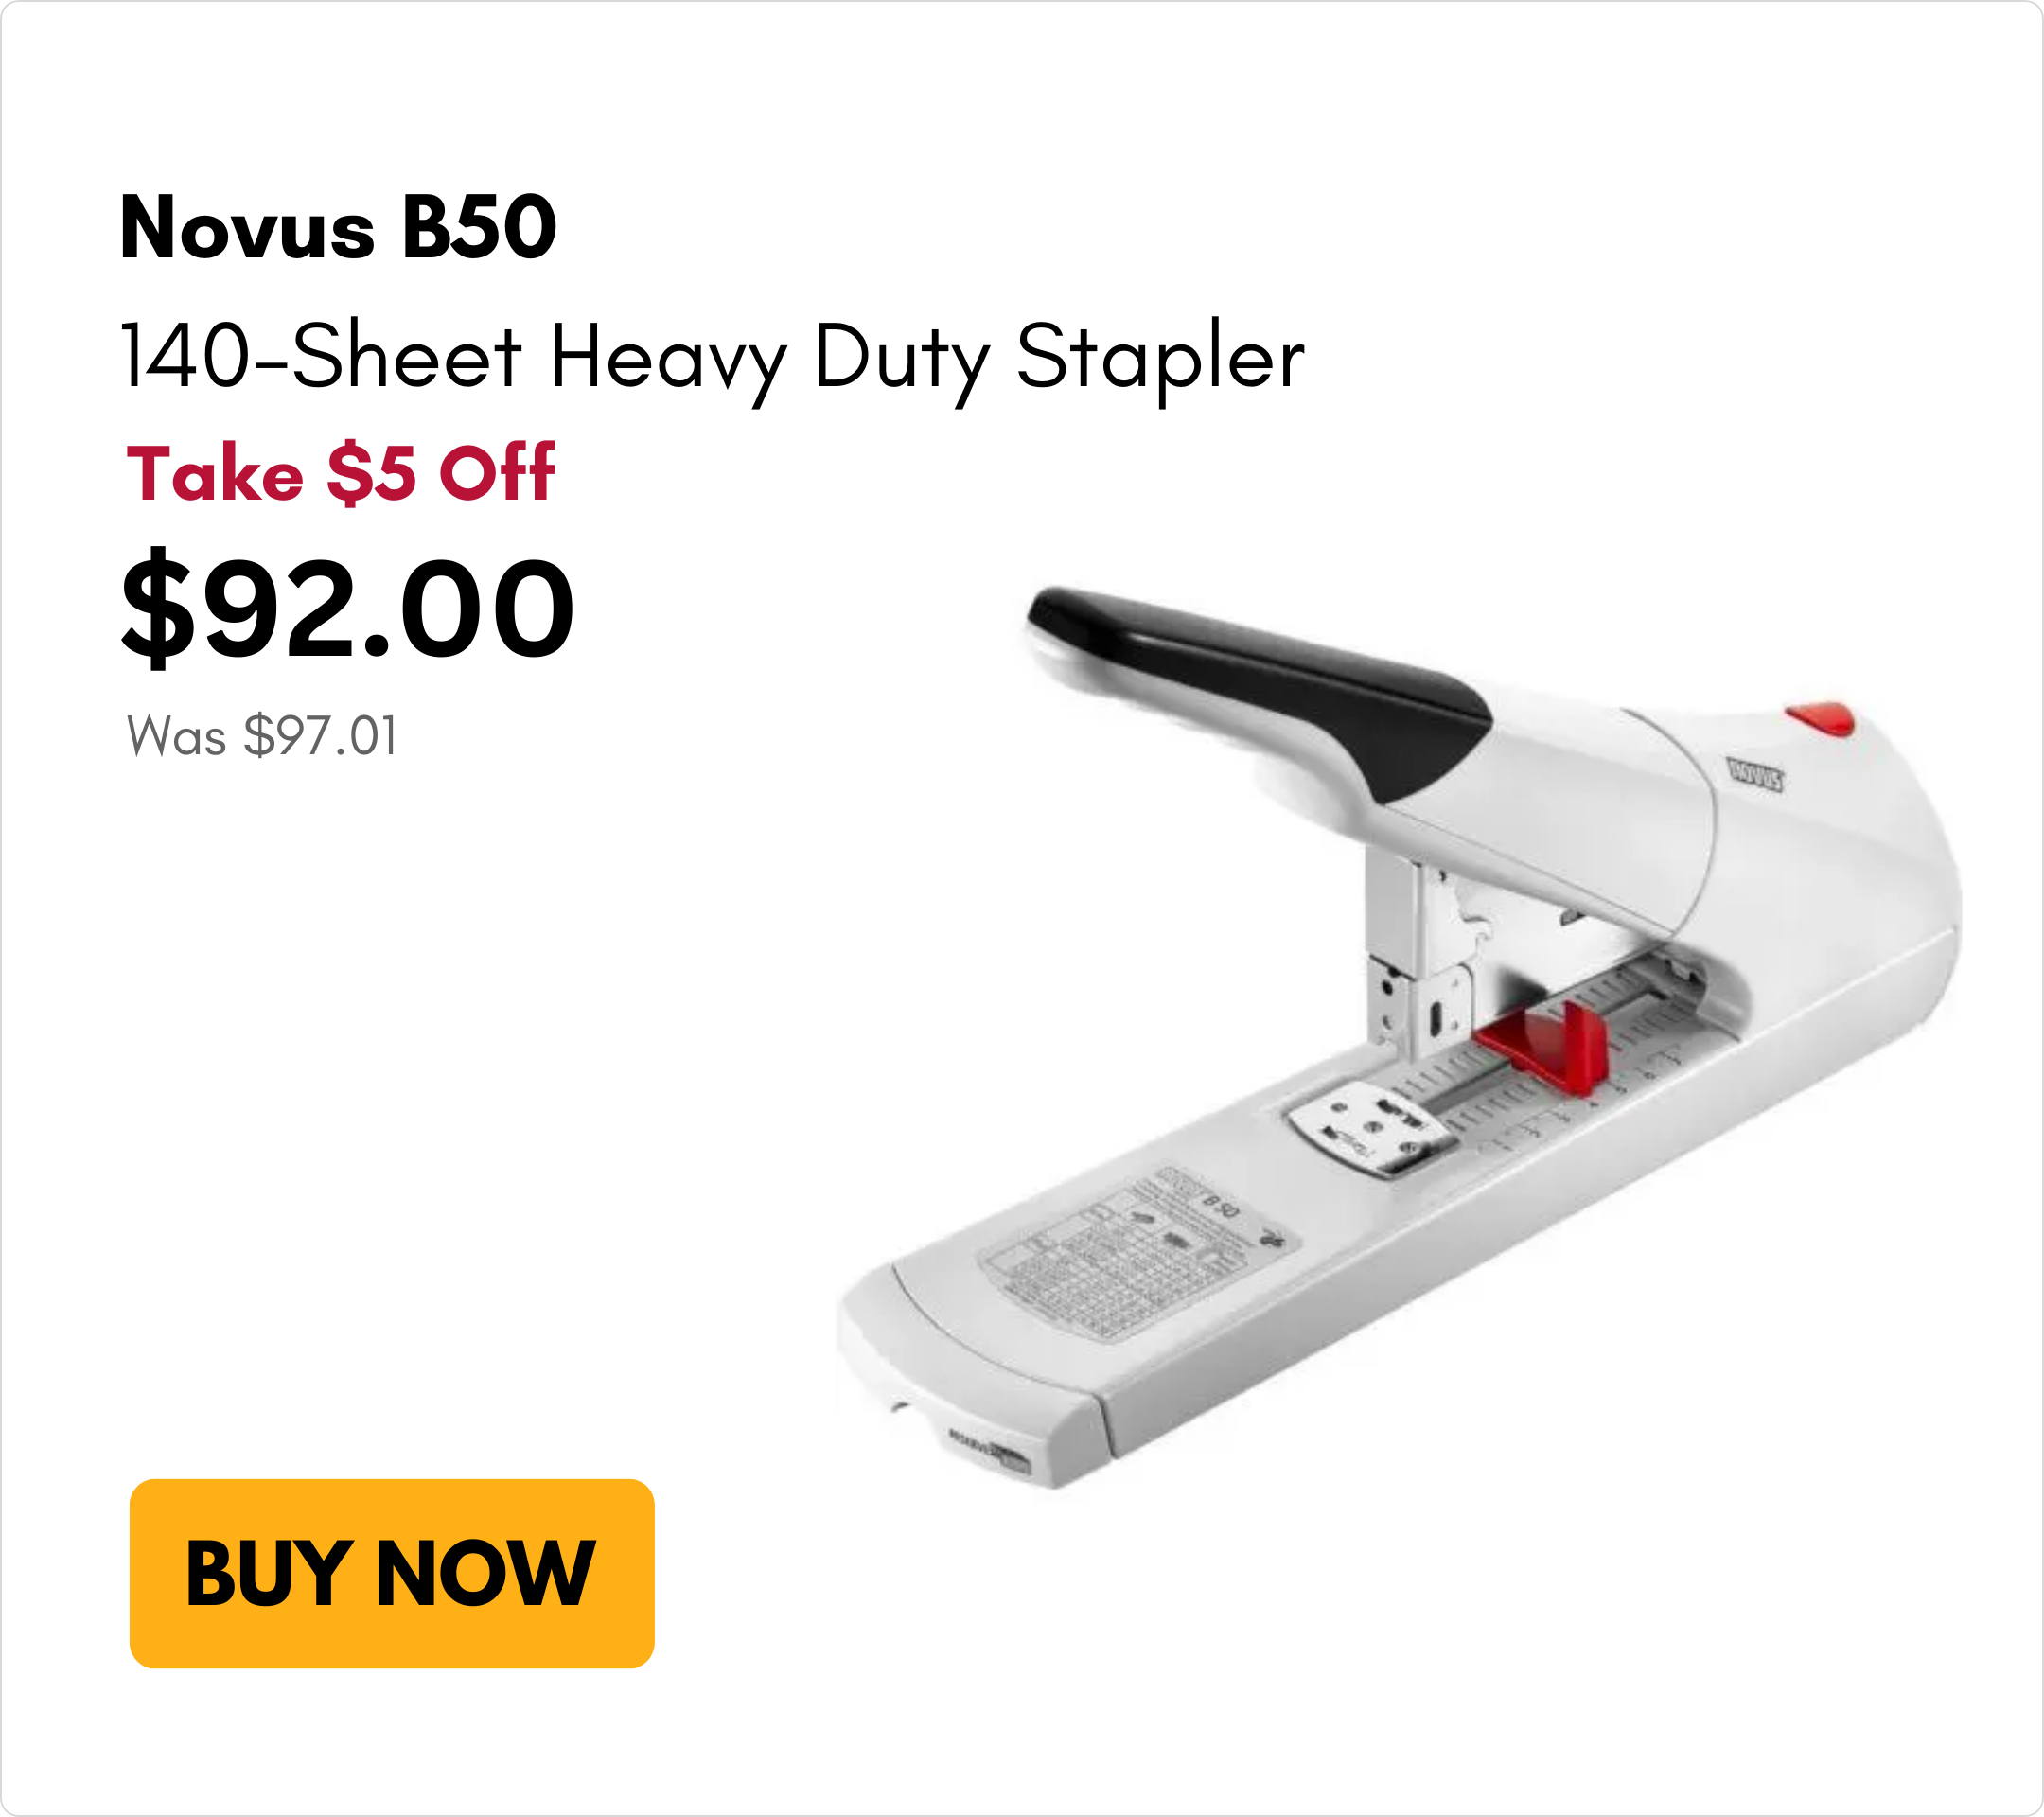 Novus B50 140-Sheet Heavy Duty Stapler on Sale for $5 off on MyBinding.com